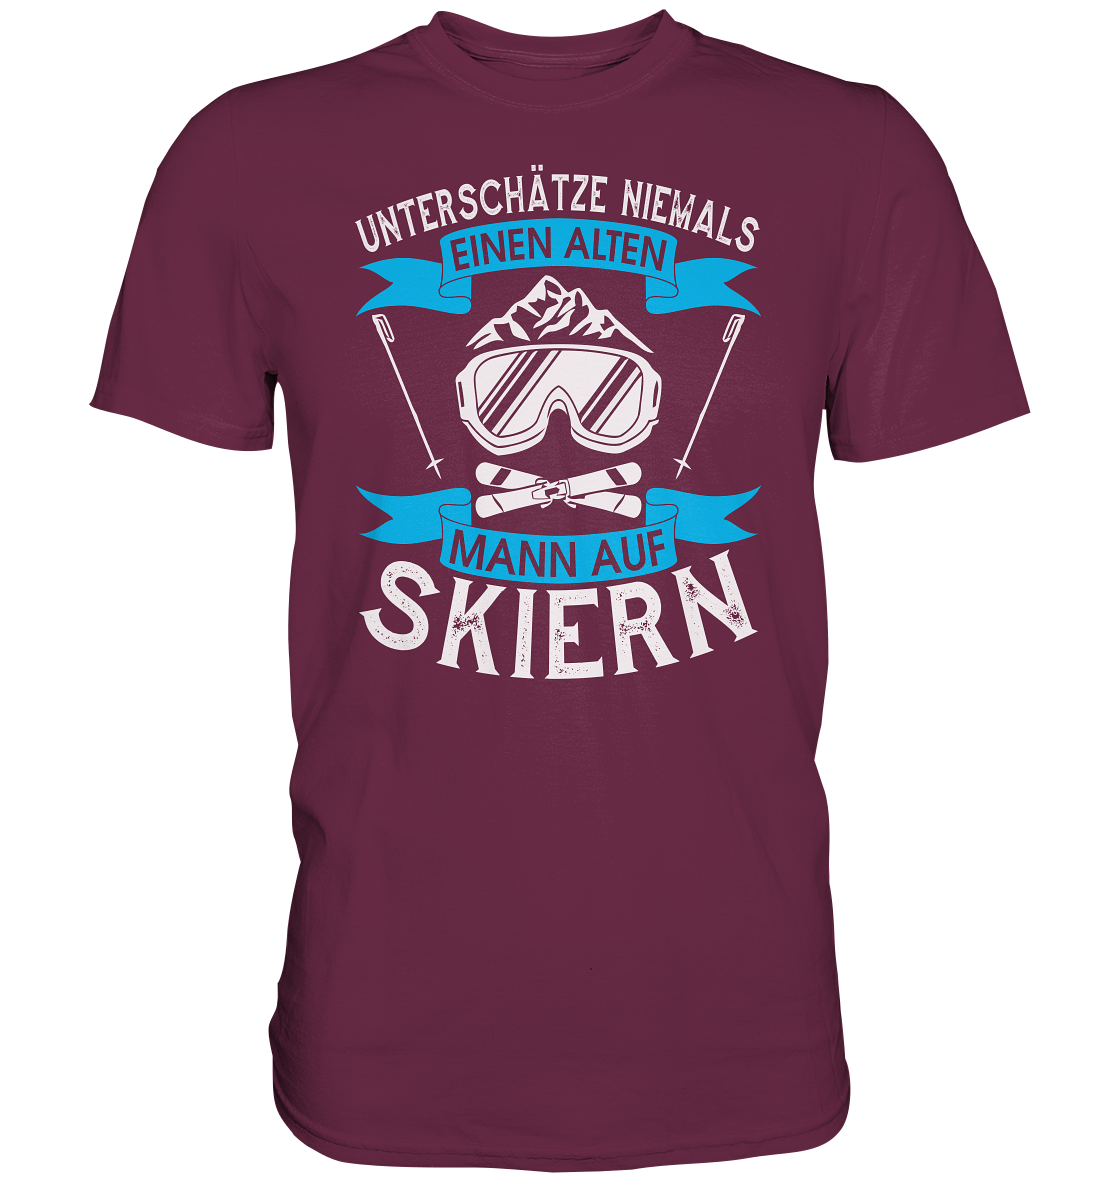 Unterschätze niemals einen alten Mann auf Skiern - Premium unisex Shirt